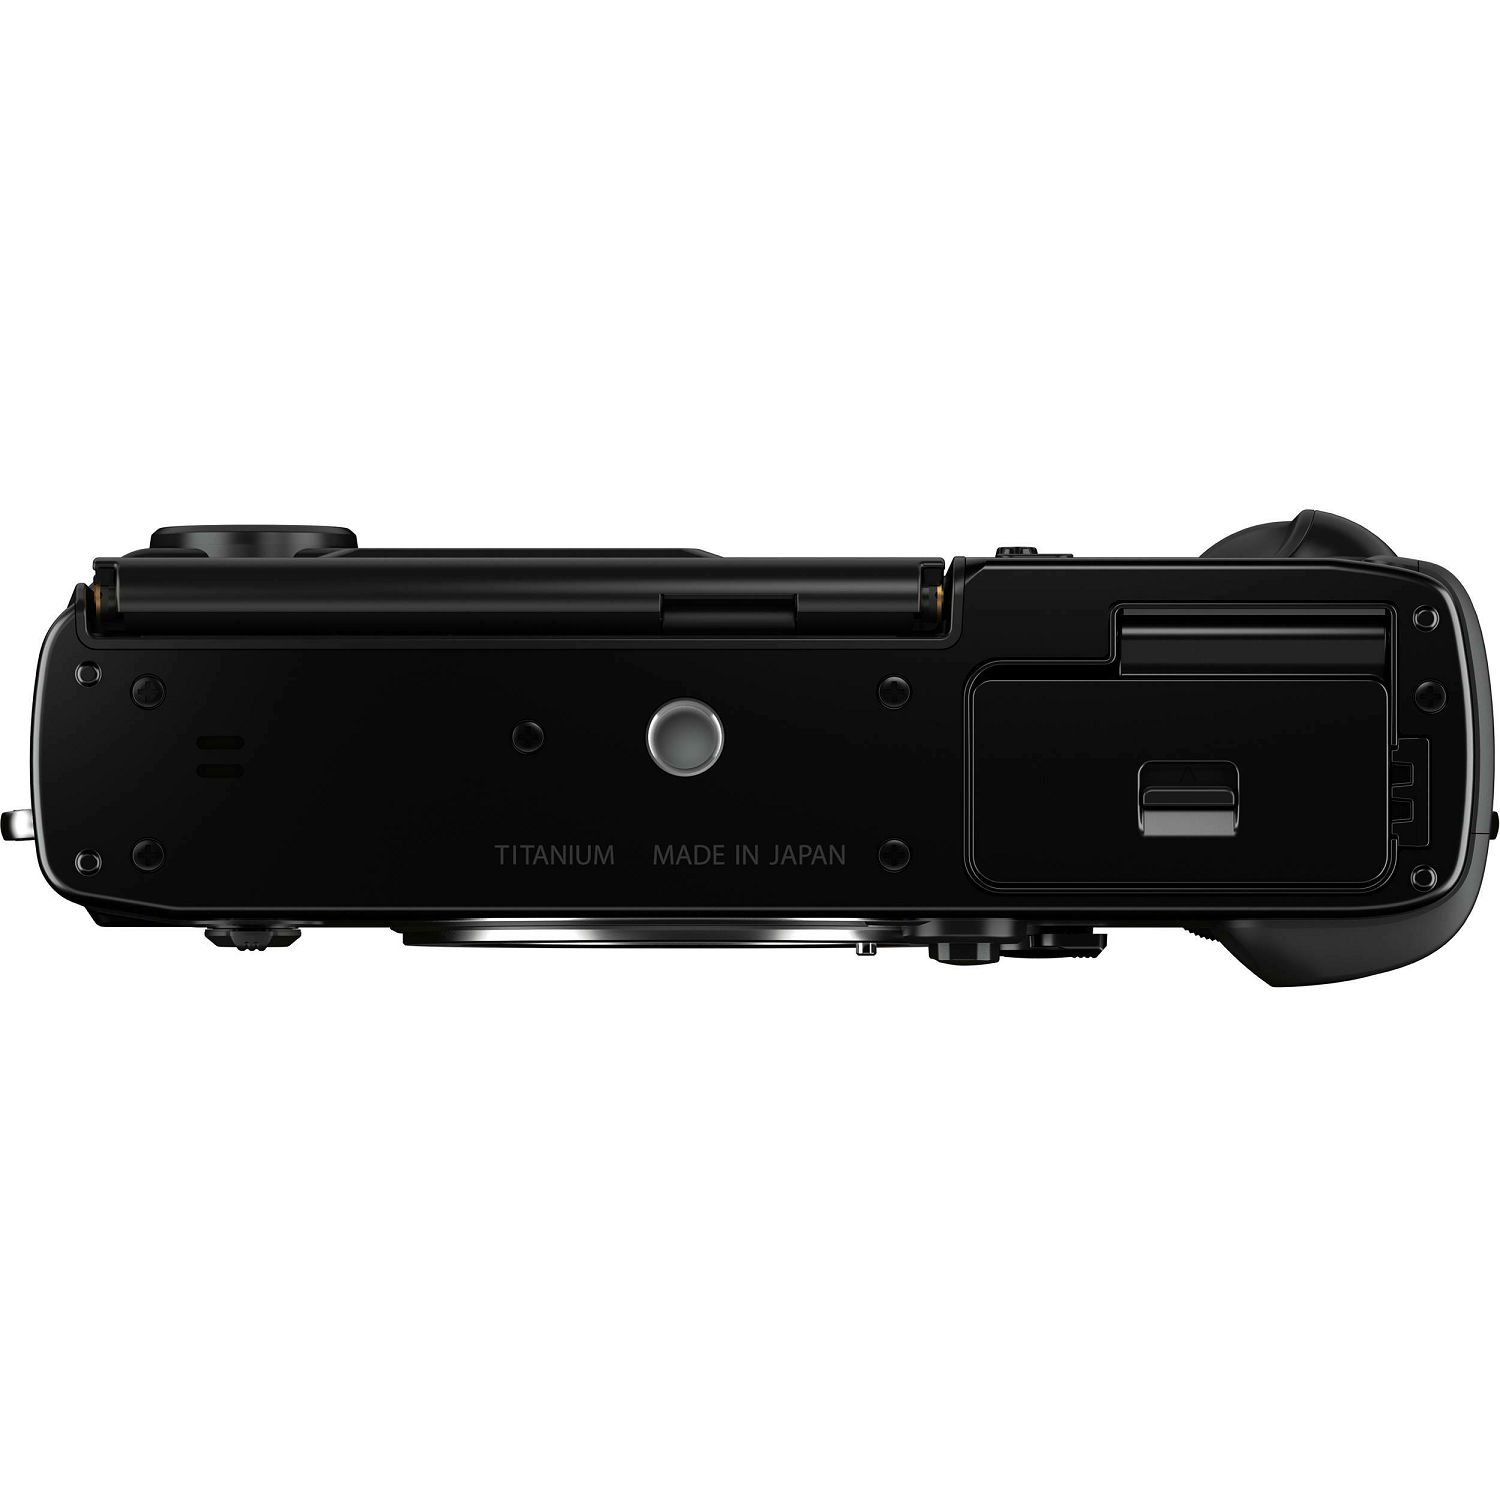 Fujifilm X-Pro3 Body Black crni Fuji digitalni fotoaparat Mirrorless camera (16641090)